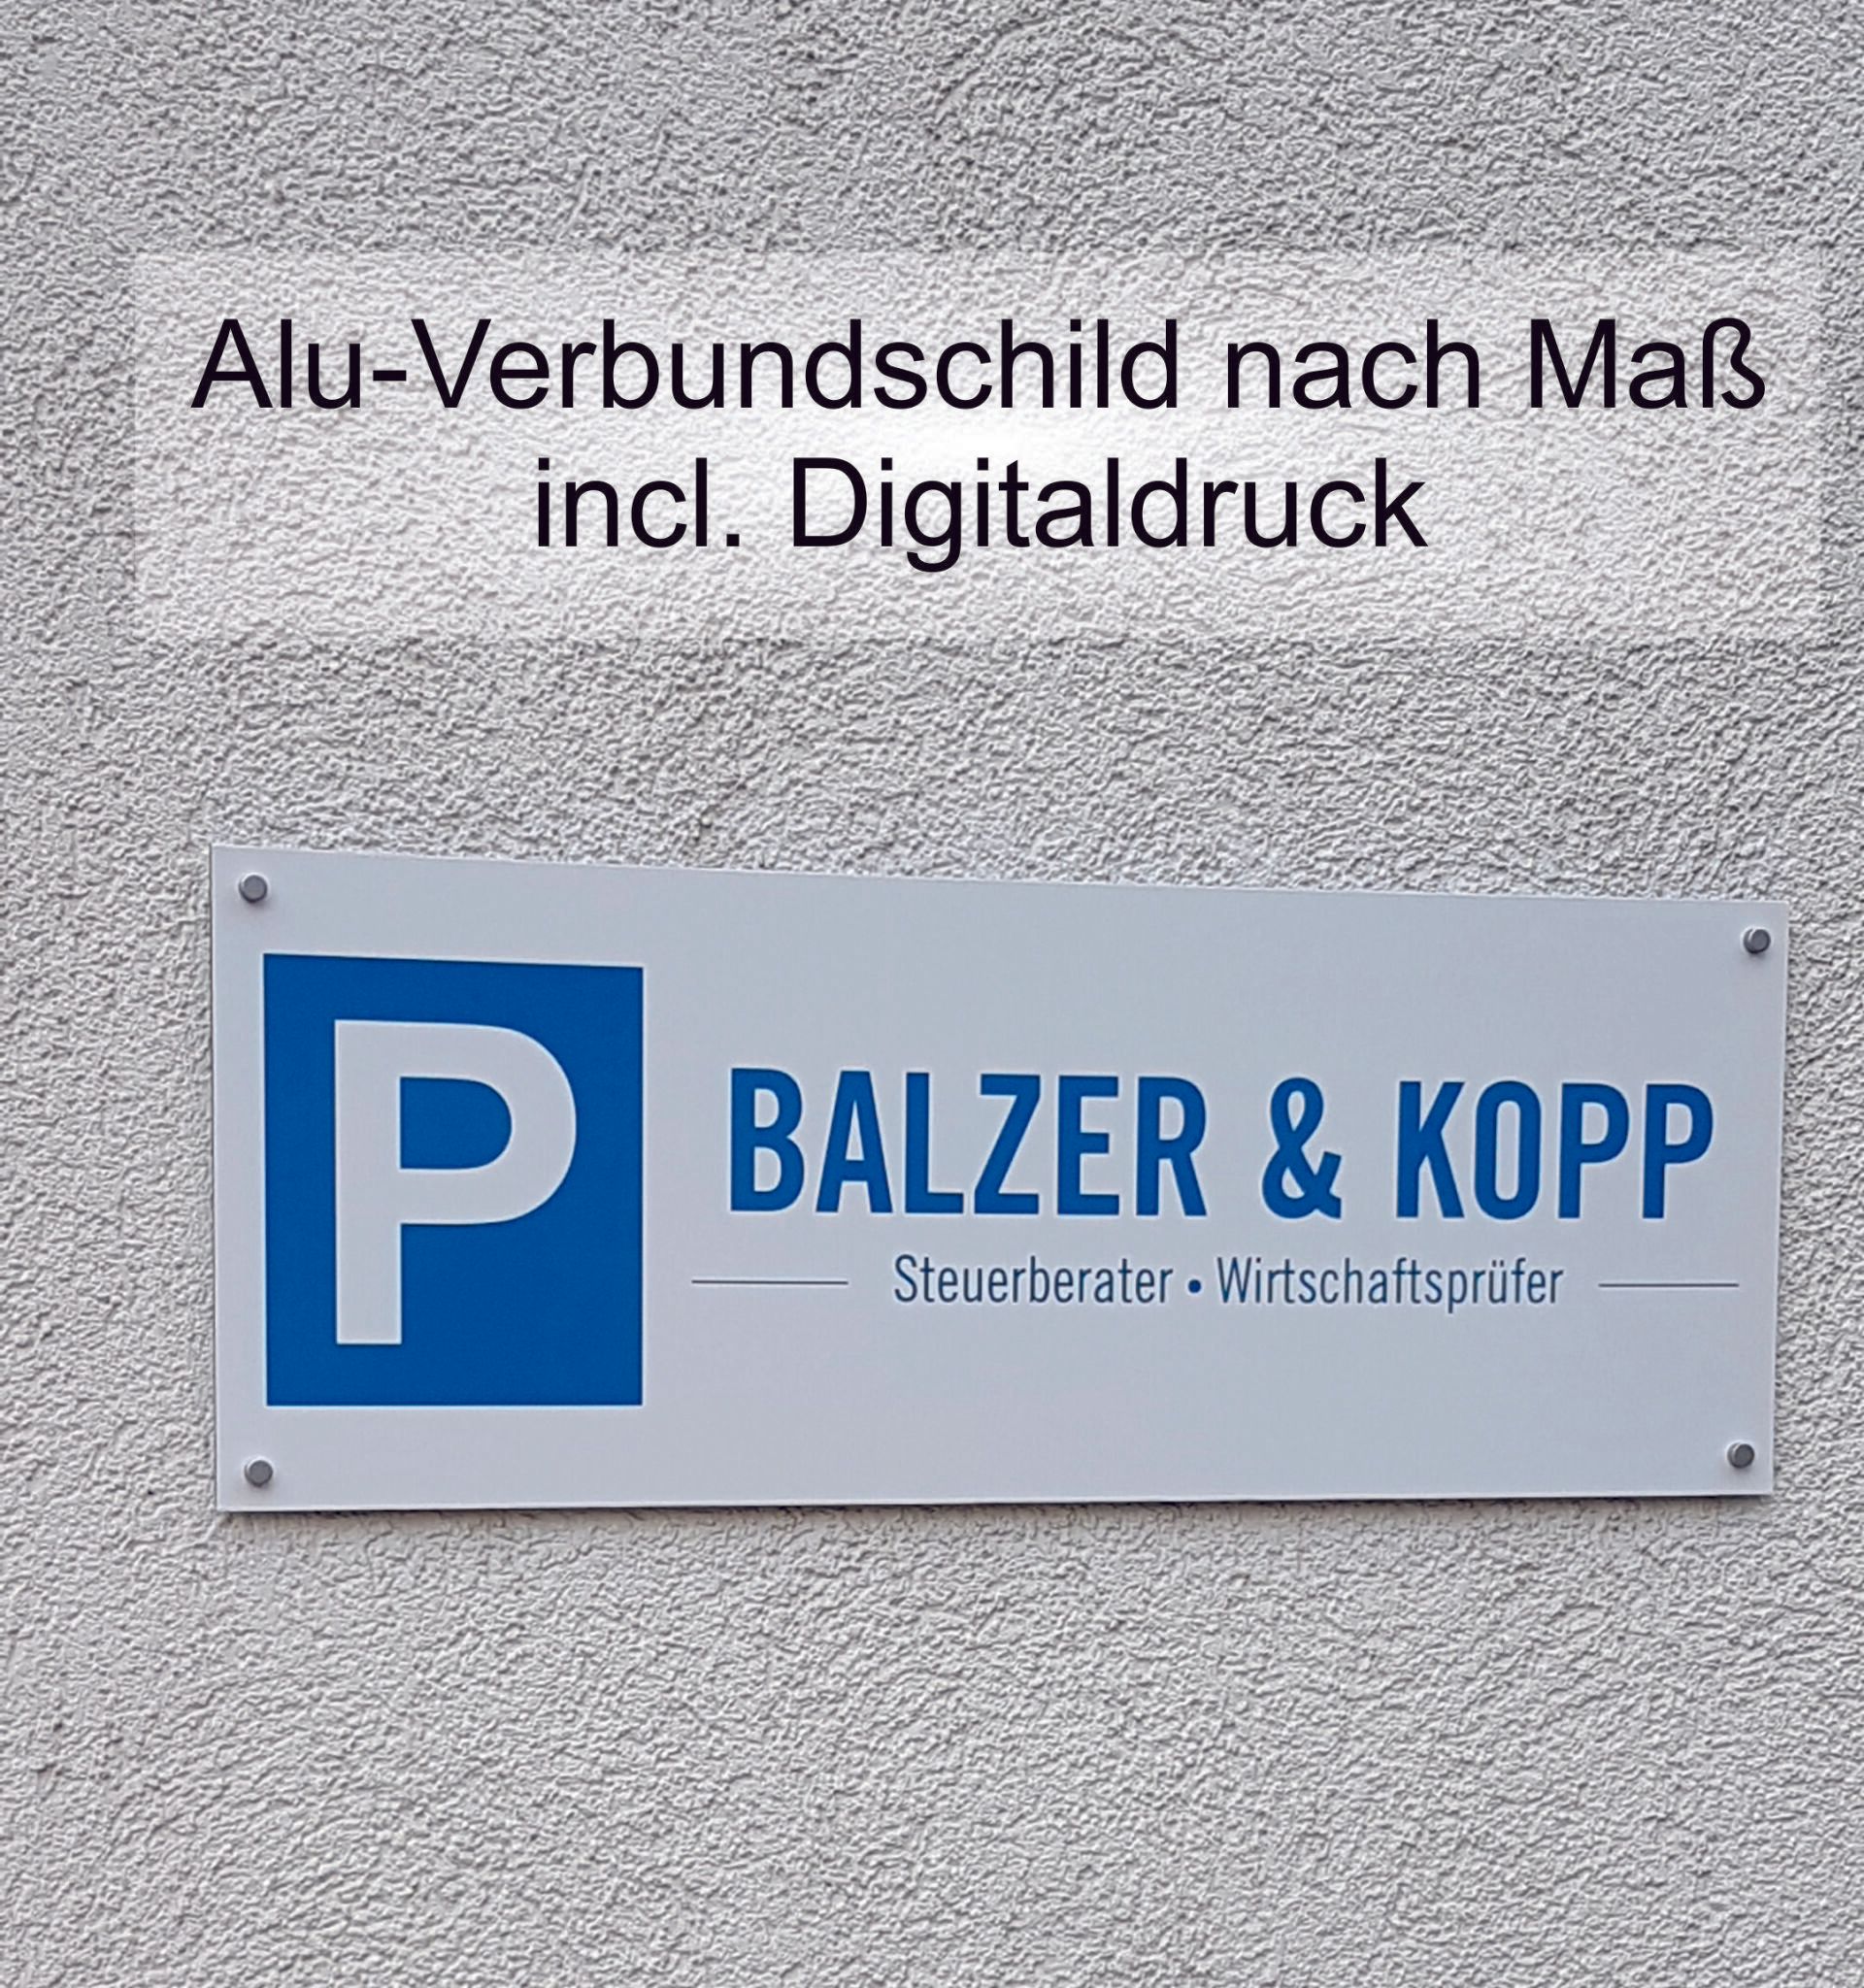 Schilder für unseren Kunden Balzer & Kopp in Malsch